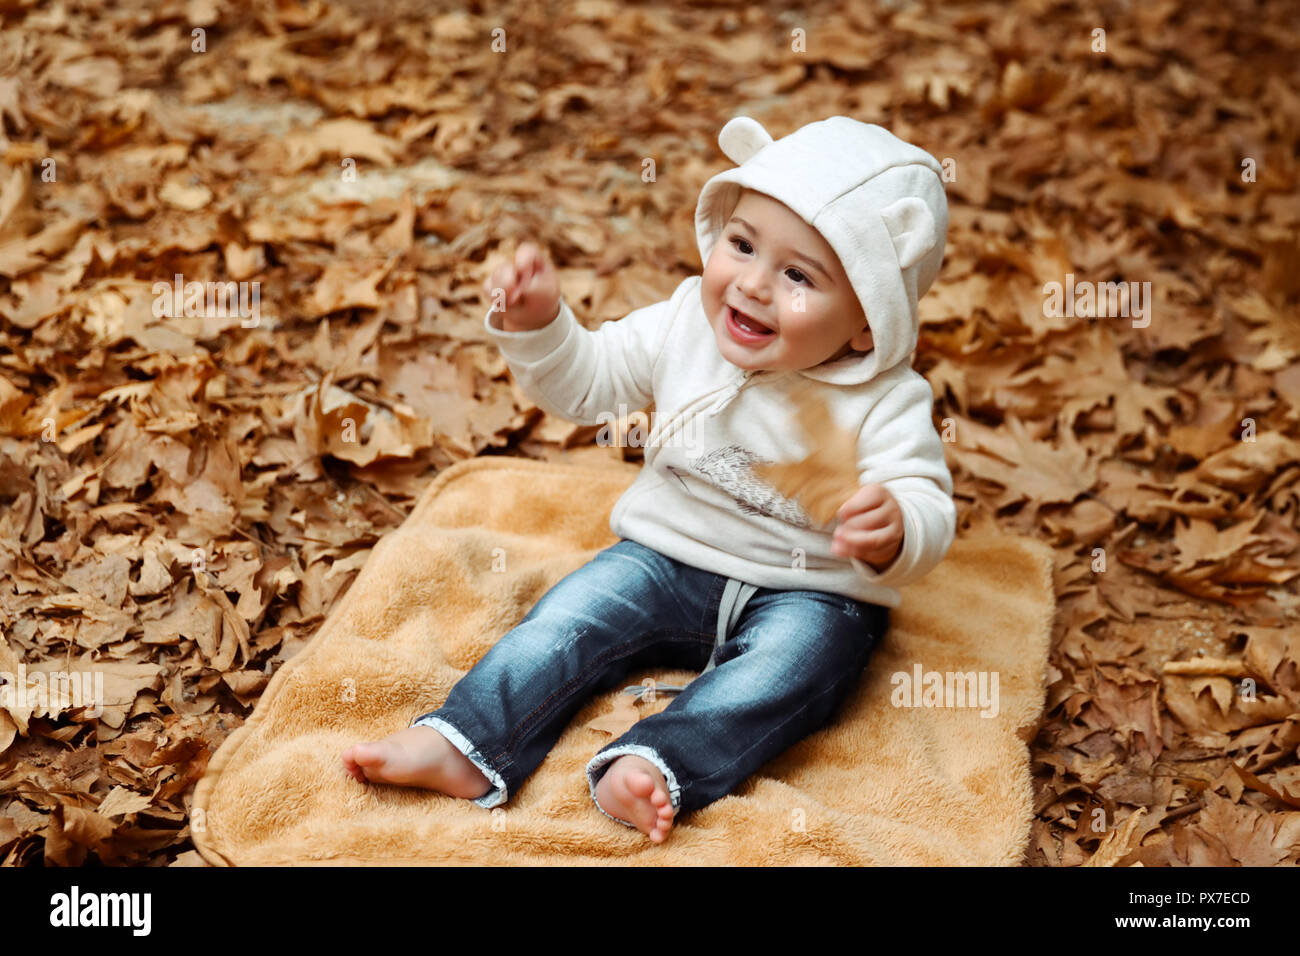 Fröhliche Junge mit Vergnügen die Zeit im Herbst Park, Little Baby sitting barfuß auf die Decke auf dem Boden mit trockenen Baum Blättern bedeckt, h Stockfoto